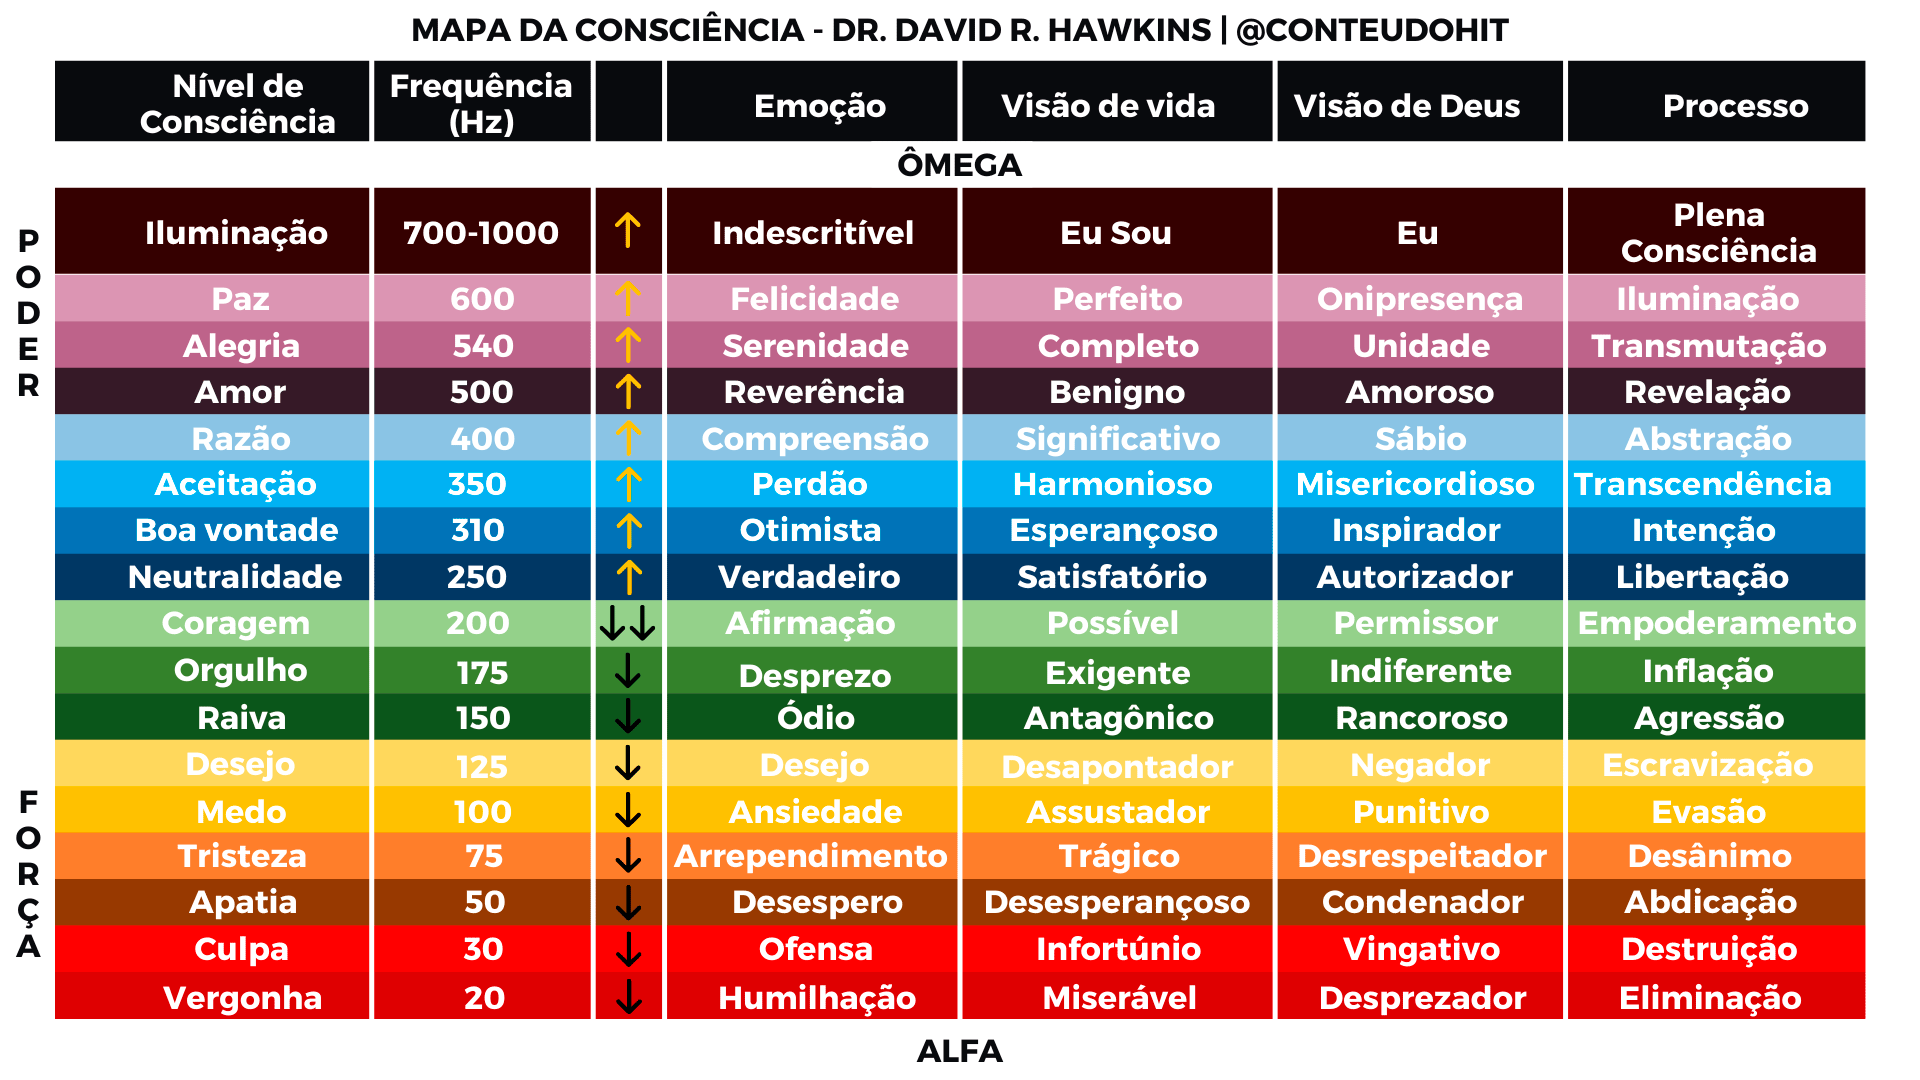 MAPA DA CONSCIÊNCIA/ NÍVEIS DE CONSCIÊNCIA - DR. DAVID R. HAWKINS @CONTEUDOHIT